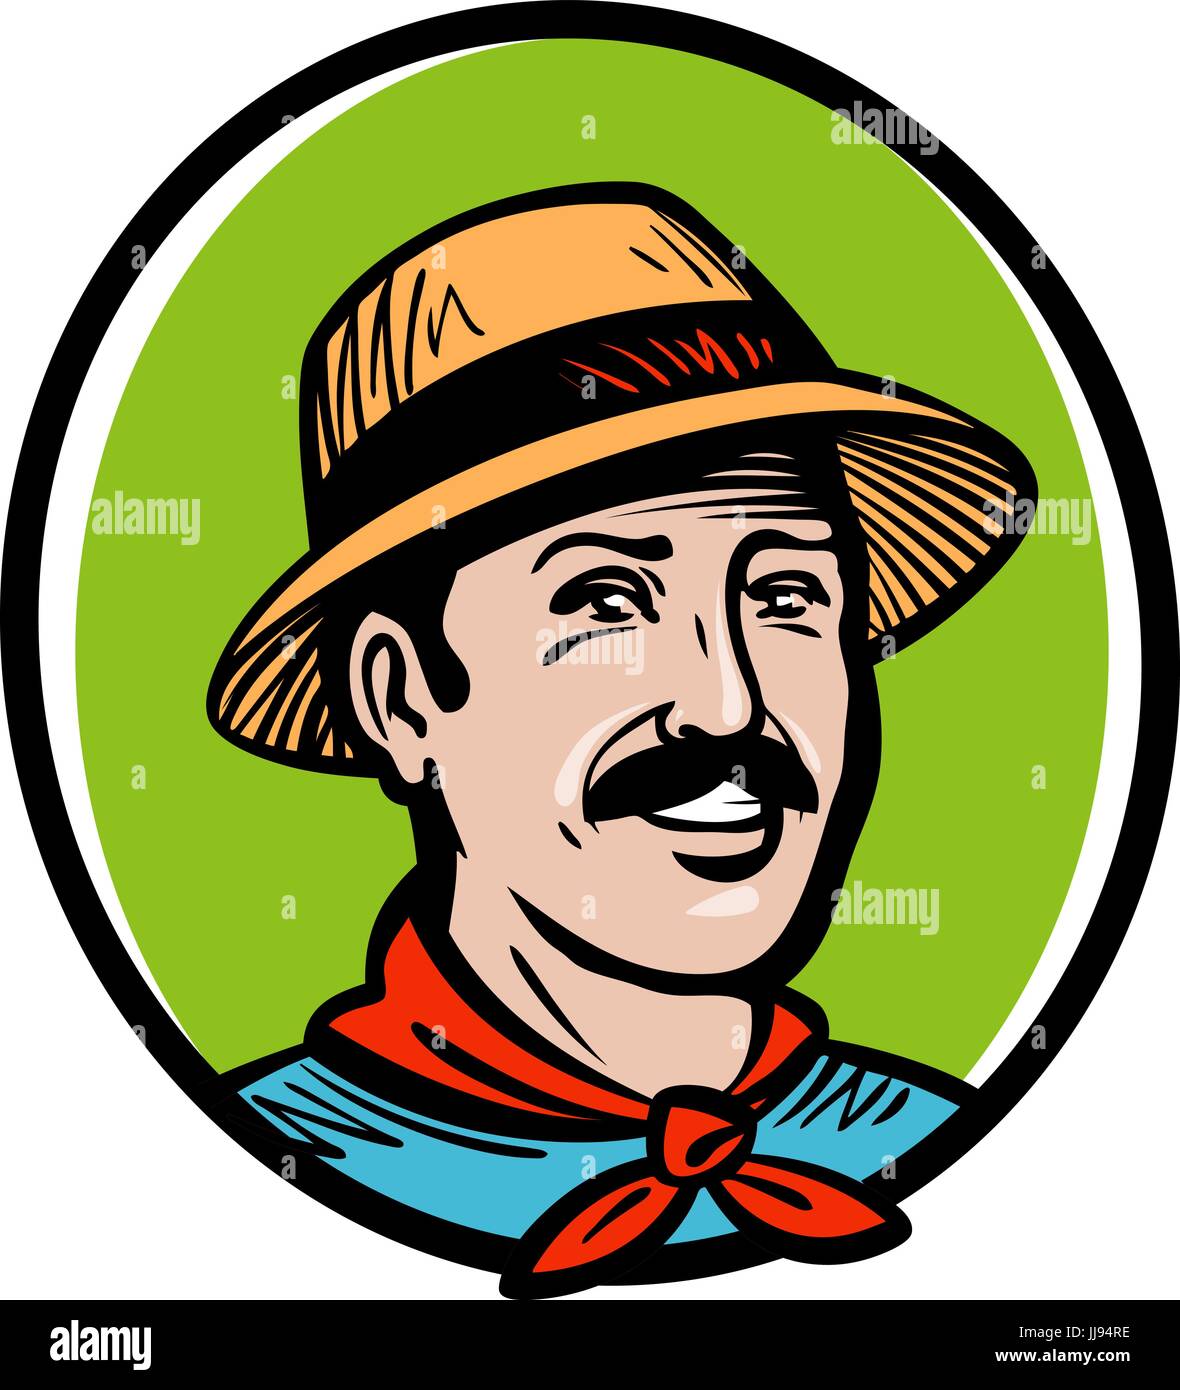 Bauer, Gärtner-Logo. Bauernhof Produkt, Landwirtschaft, Gartenbau, Gartenbau, Landwirtschaft Label oder Symbol. Cartoon-Vektor-illustration Stock Vektor